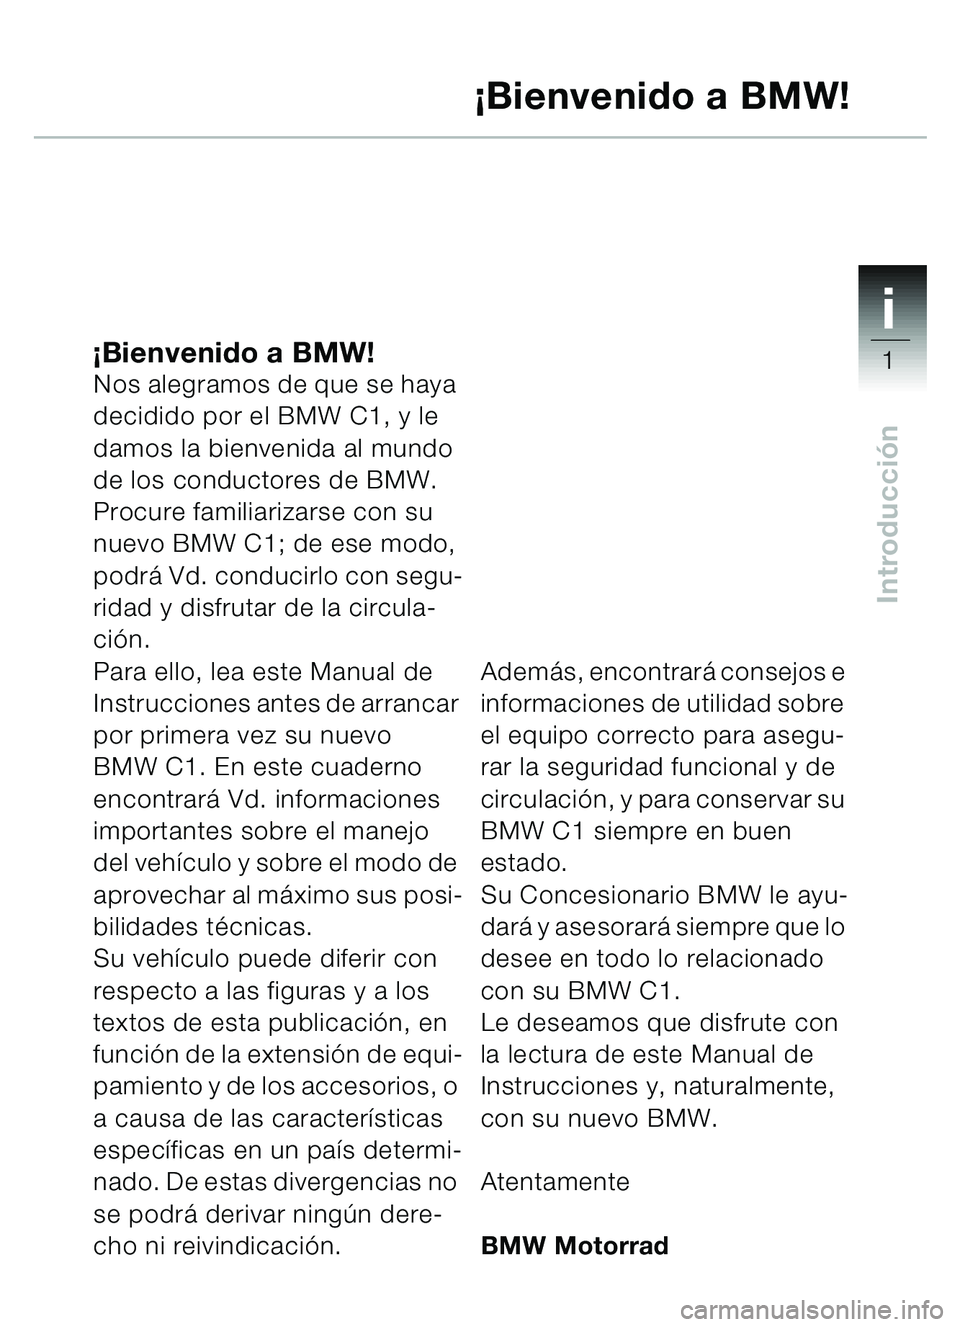 BMW MOTORRAD C1 2000  Manual de instrucciones (in Spanish) 1i
1
Introducción
¡Bienvenido a BMW!Nos alegramos de que se haya 
decidido por el BMW C1, y le 
damos la bienvenida al mundo 
de los conductores de BMW.
Procure familiarizarse con su 
nuevo BMW C1; 